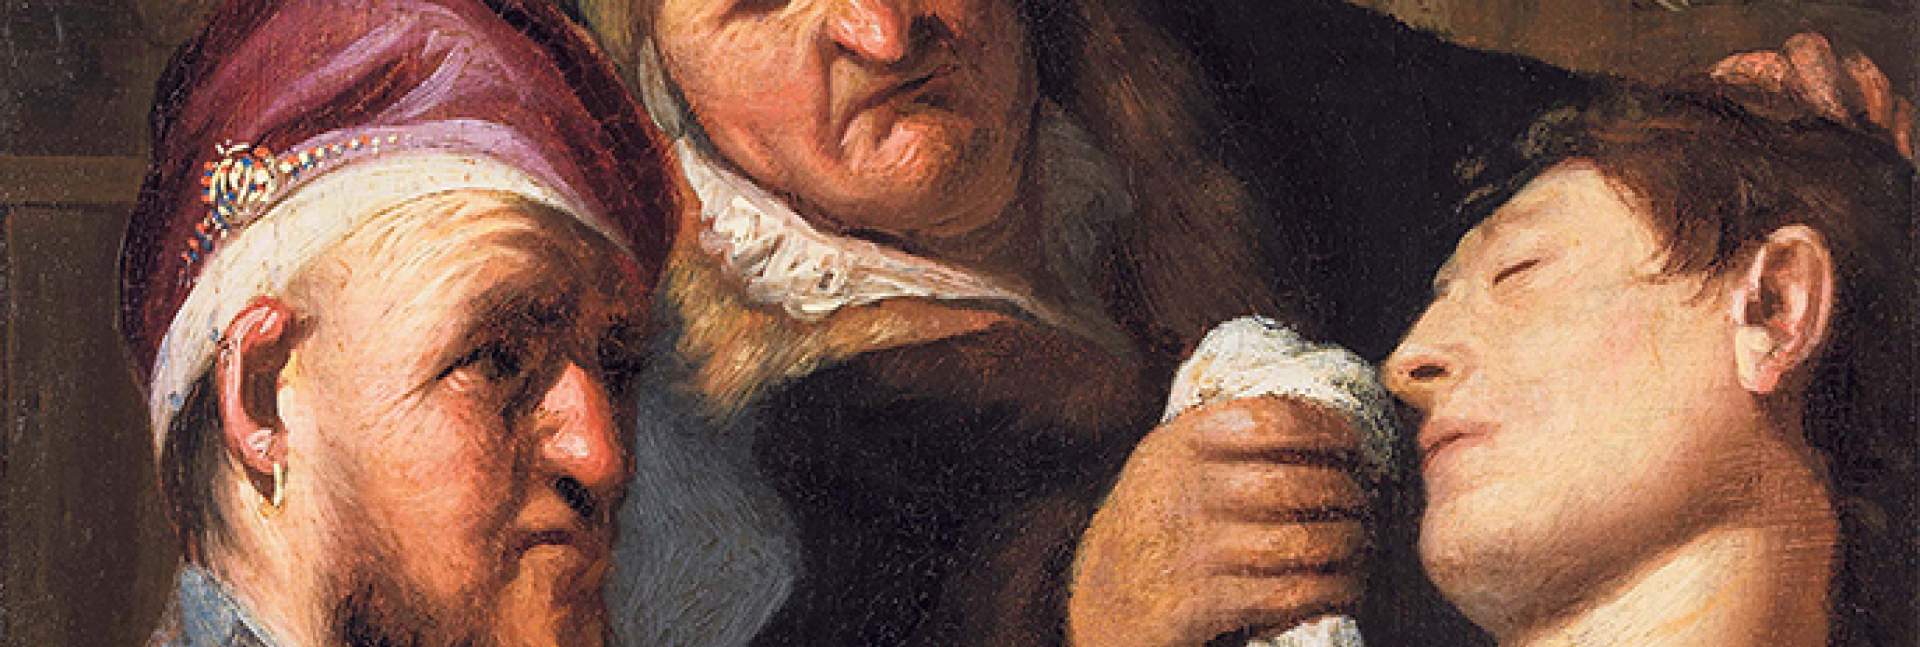 "החולה מחוסר ההכרה (אלגוריה על חוש הריח)", 1625. רמברנדט צייר יצירה זו בגיל 19 כחלק מסדרת עבודות של חמשת החושים. הציור התגלה ב-2015 באוסף של משפחה בניו ג'רזי